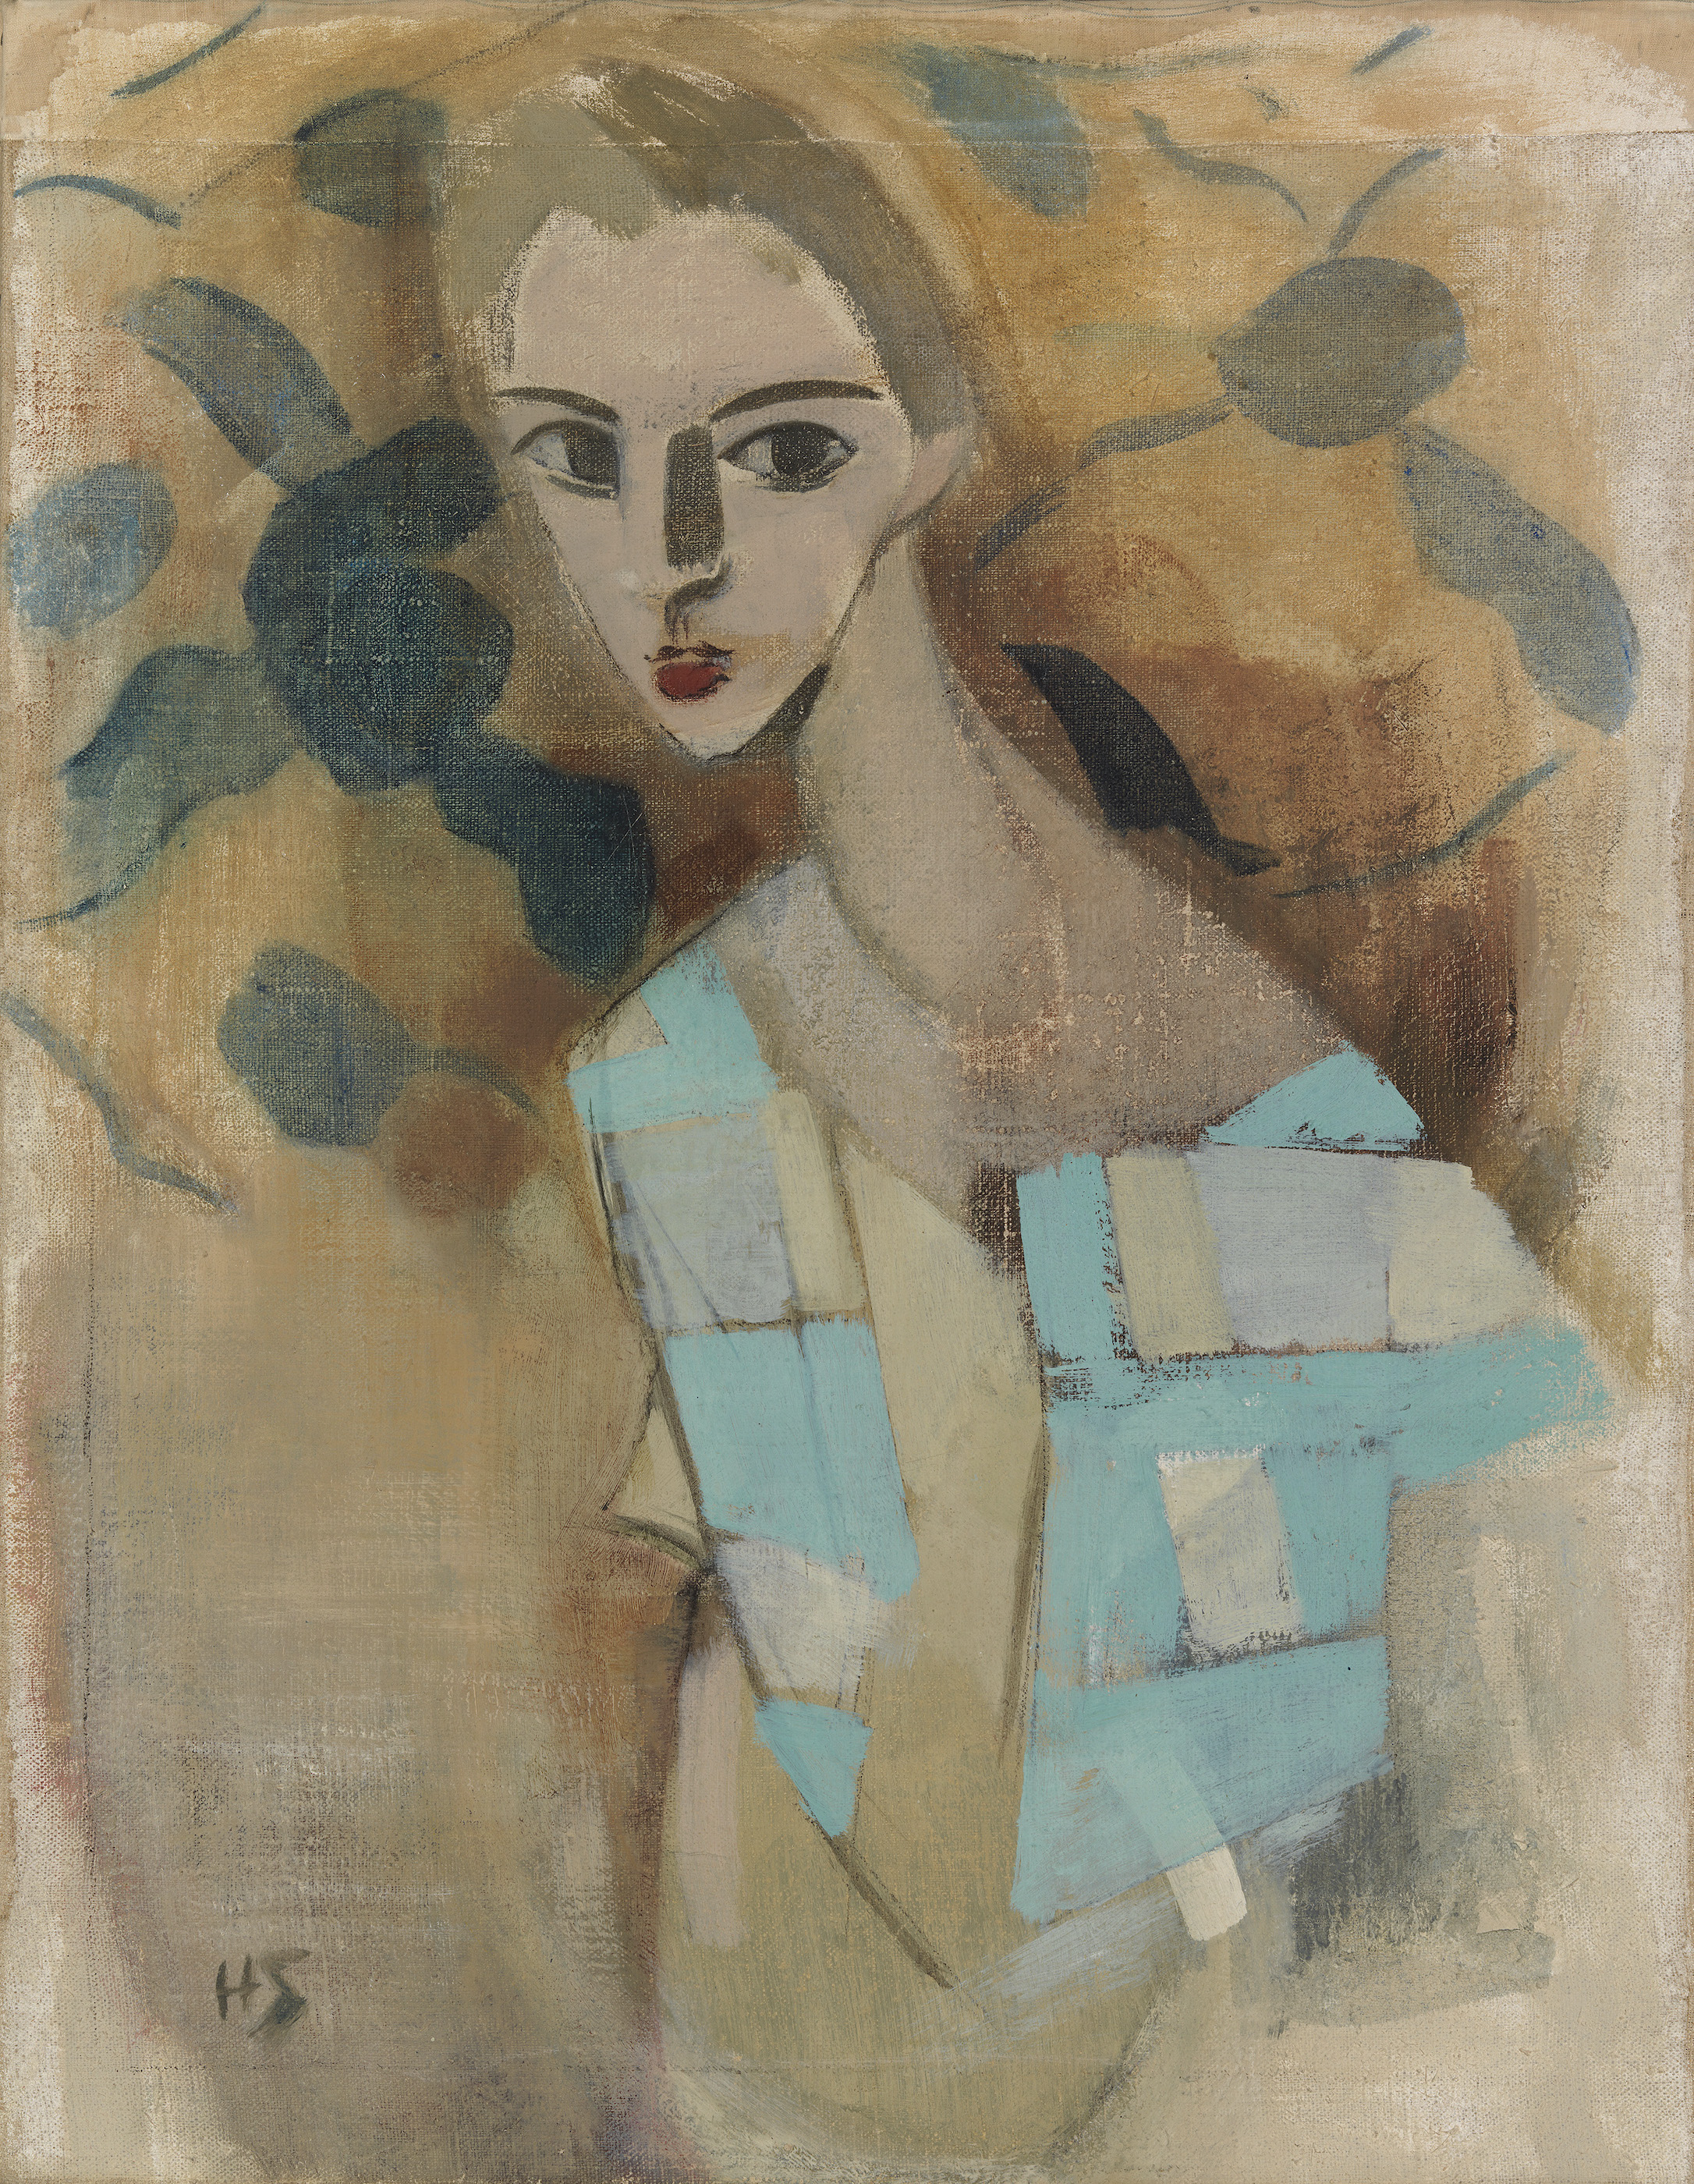 来自艾特库宁的女孩II by 海伦 谢尔夫贝克 - 1927 - 70 × 54.5 cm 芬兰国家美术馆